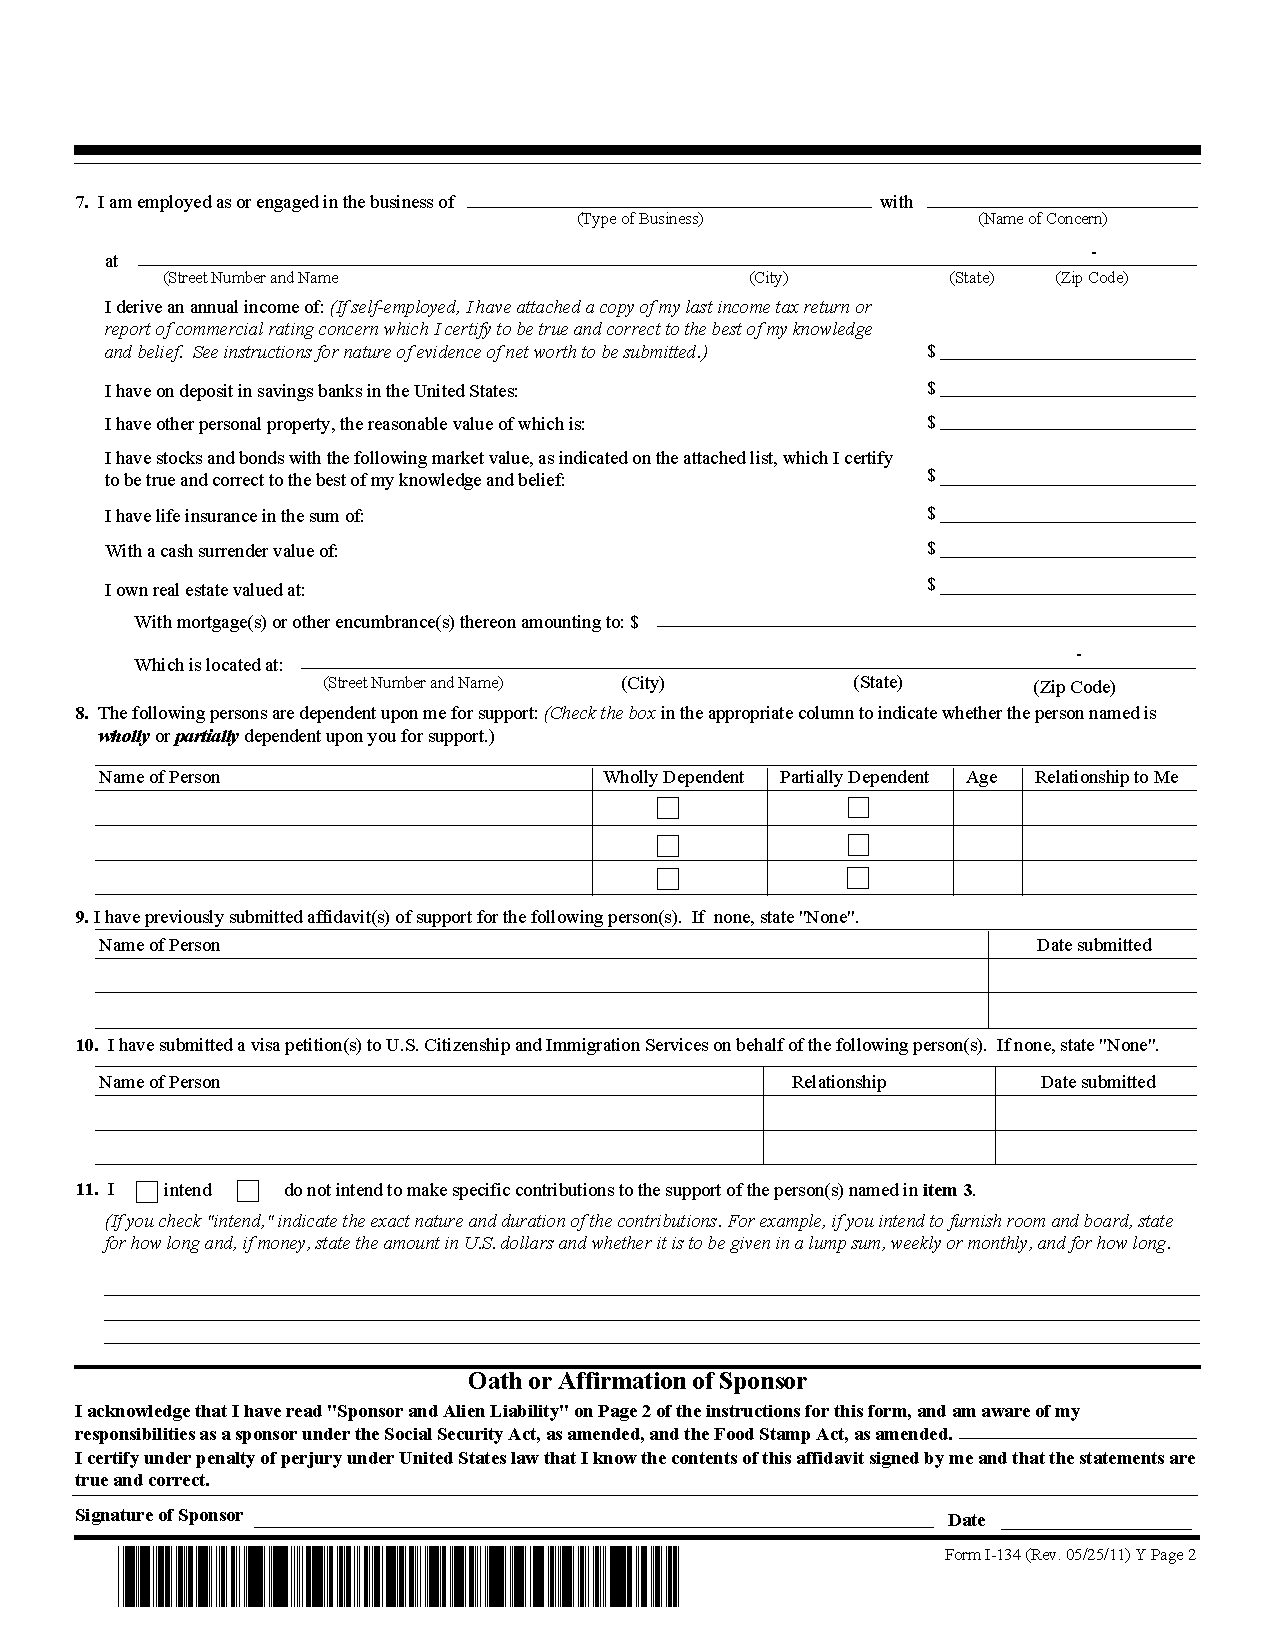 Forms I 134 Affidavit Of Support 2022 1077